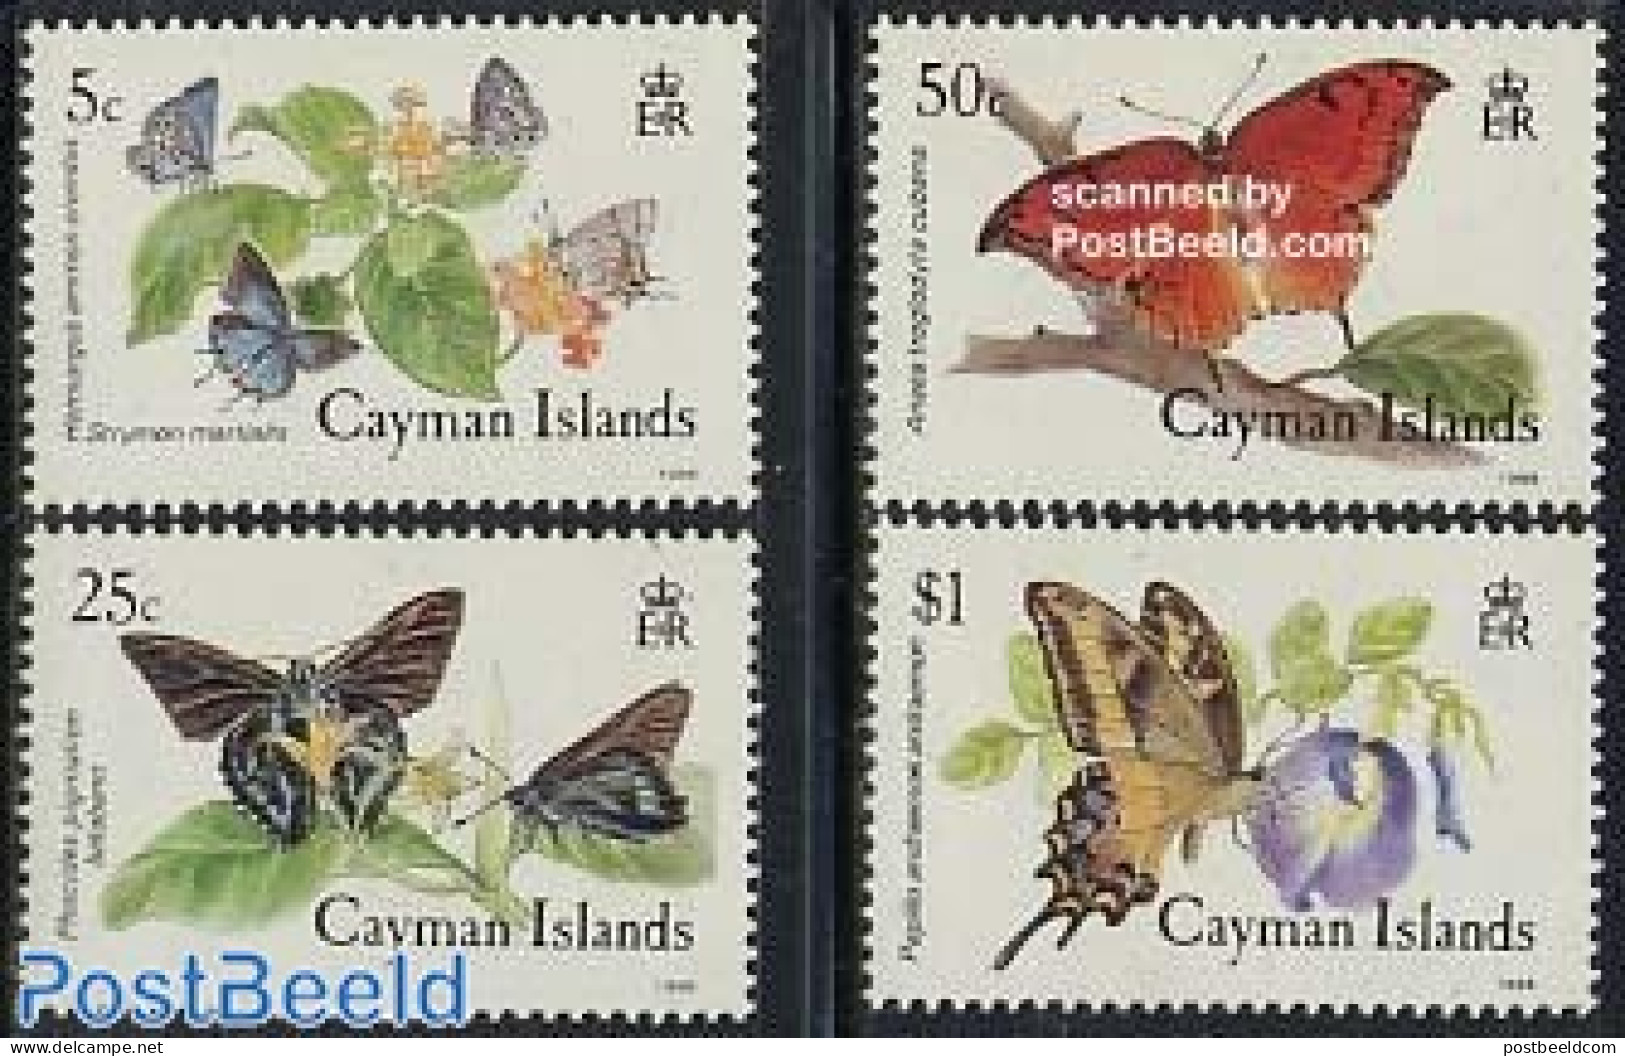 Cayman Islands 1988 Butterflies 4v, Mint NH, Nature - Butterflies - Kaimaninseln